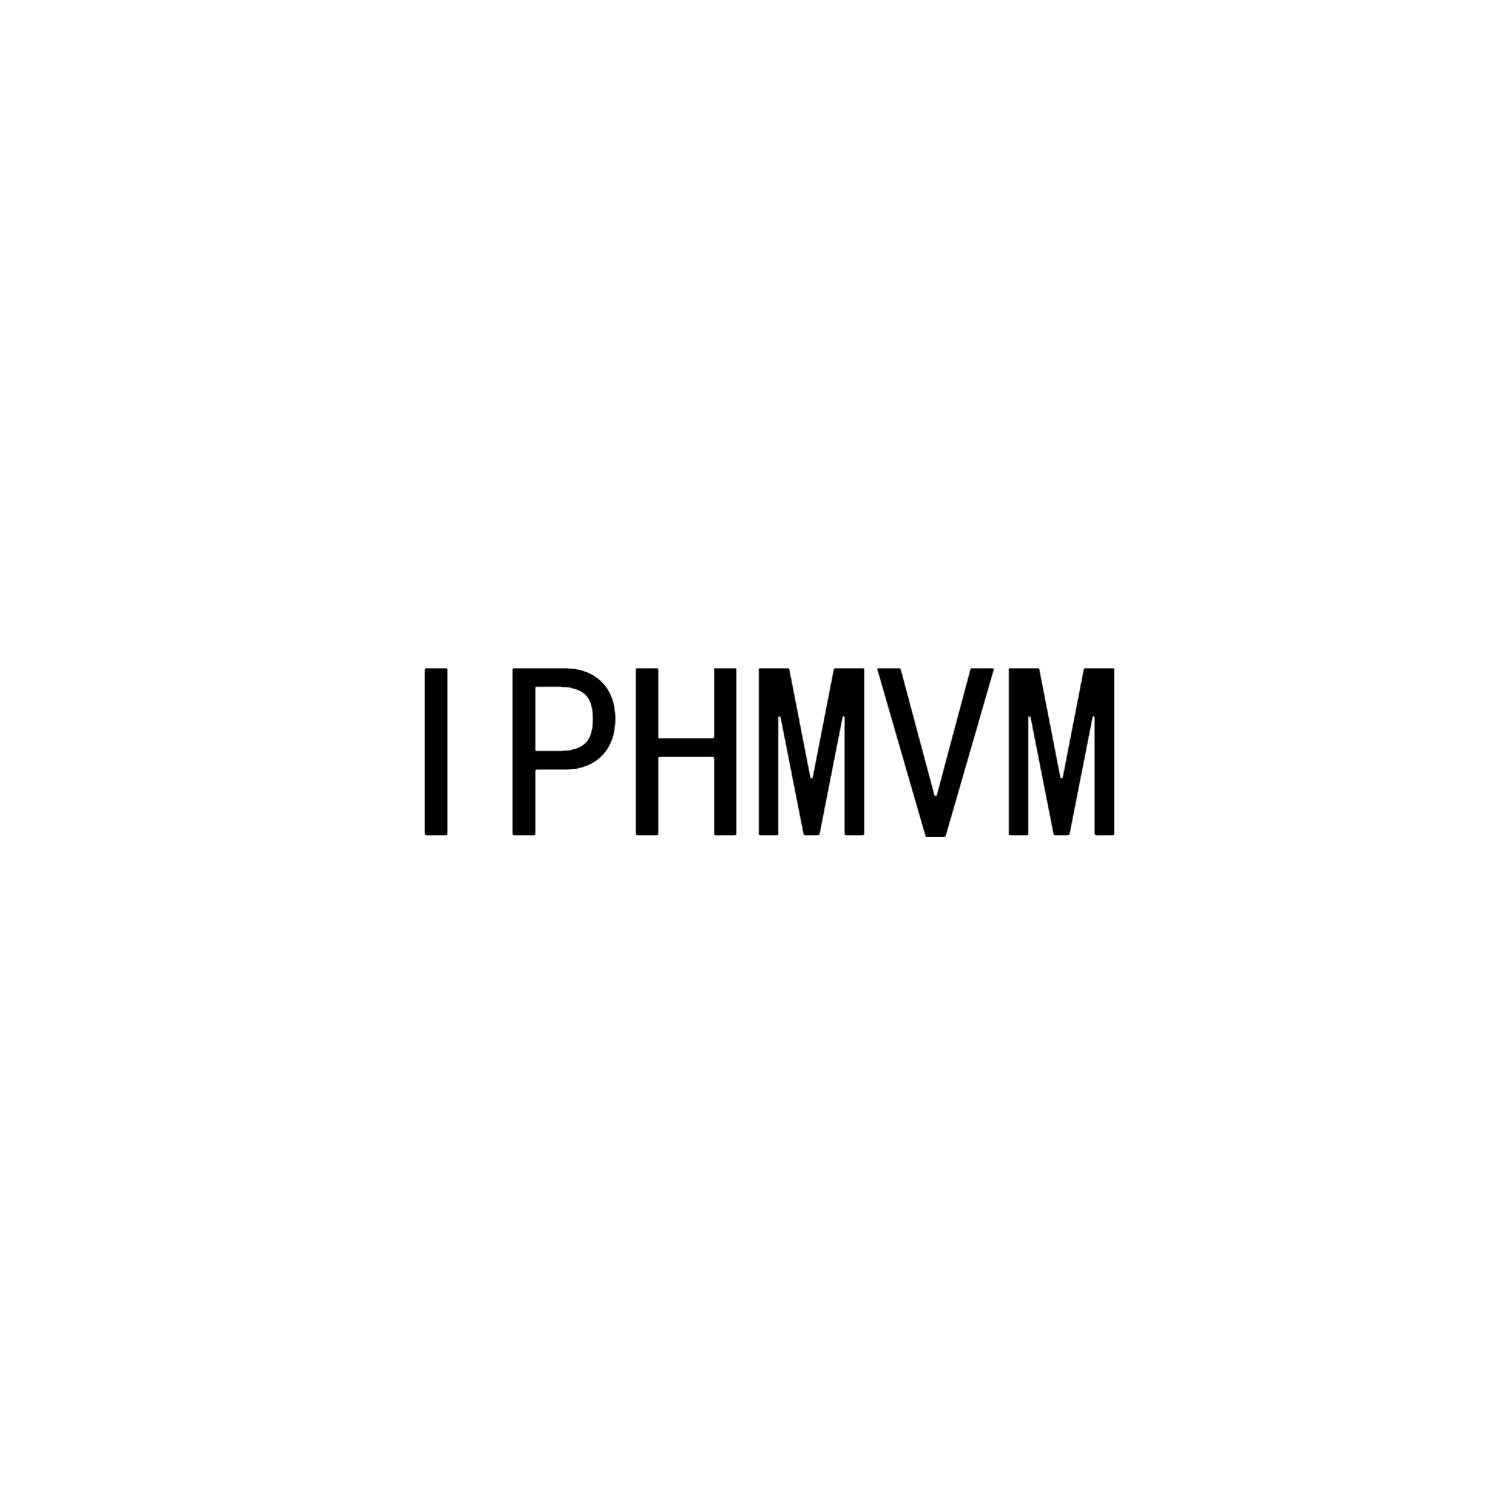 IPHMVM